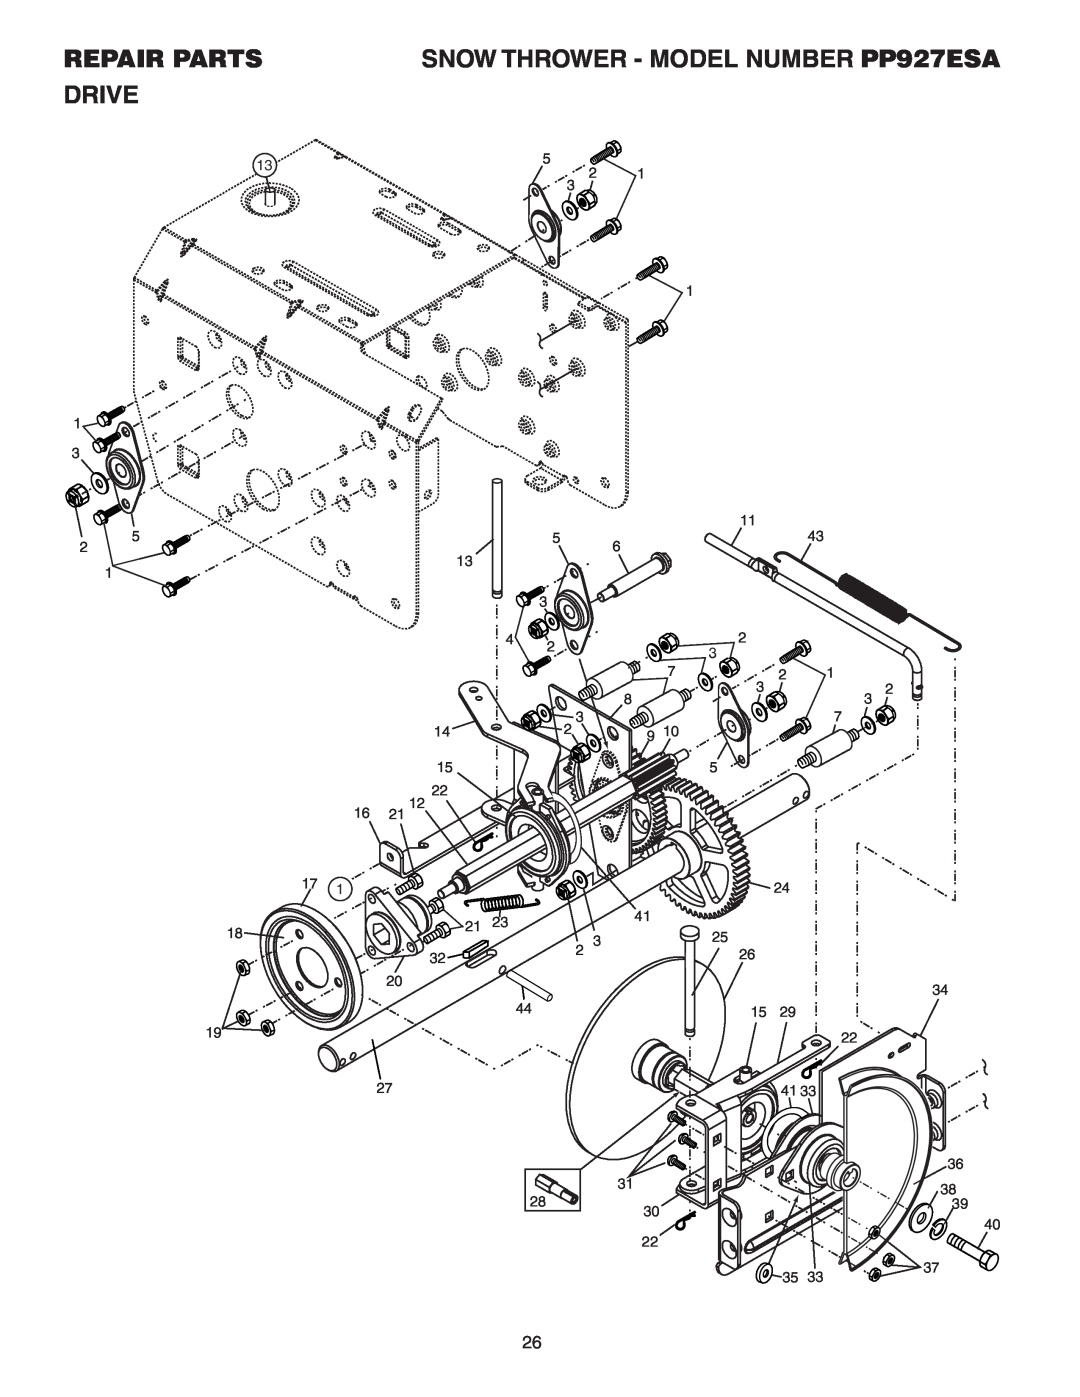 Poulan 183616 owner manual Drive, Repair Parts, SNOW THROWER - MODEL NUMBER PP927ESA 